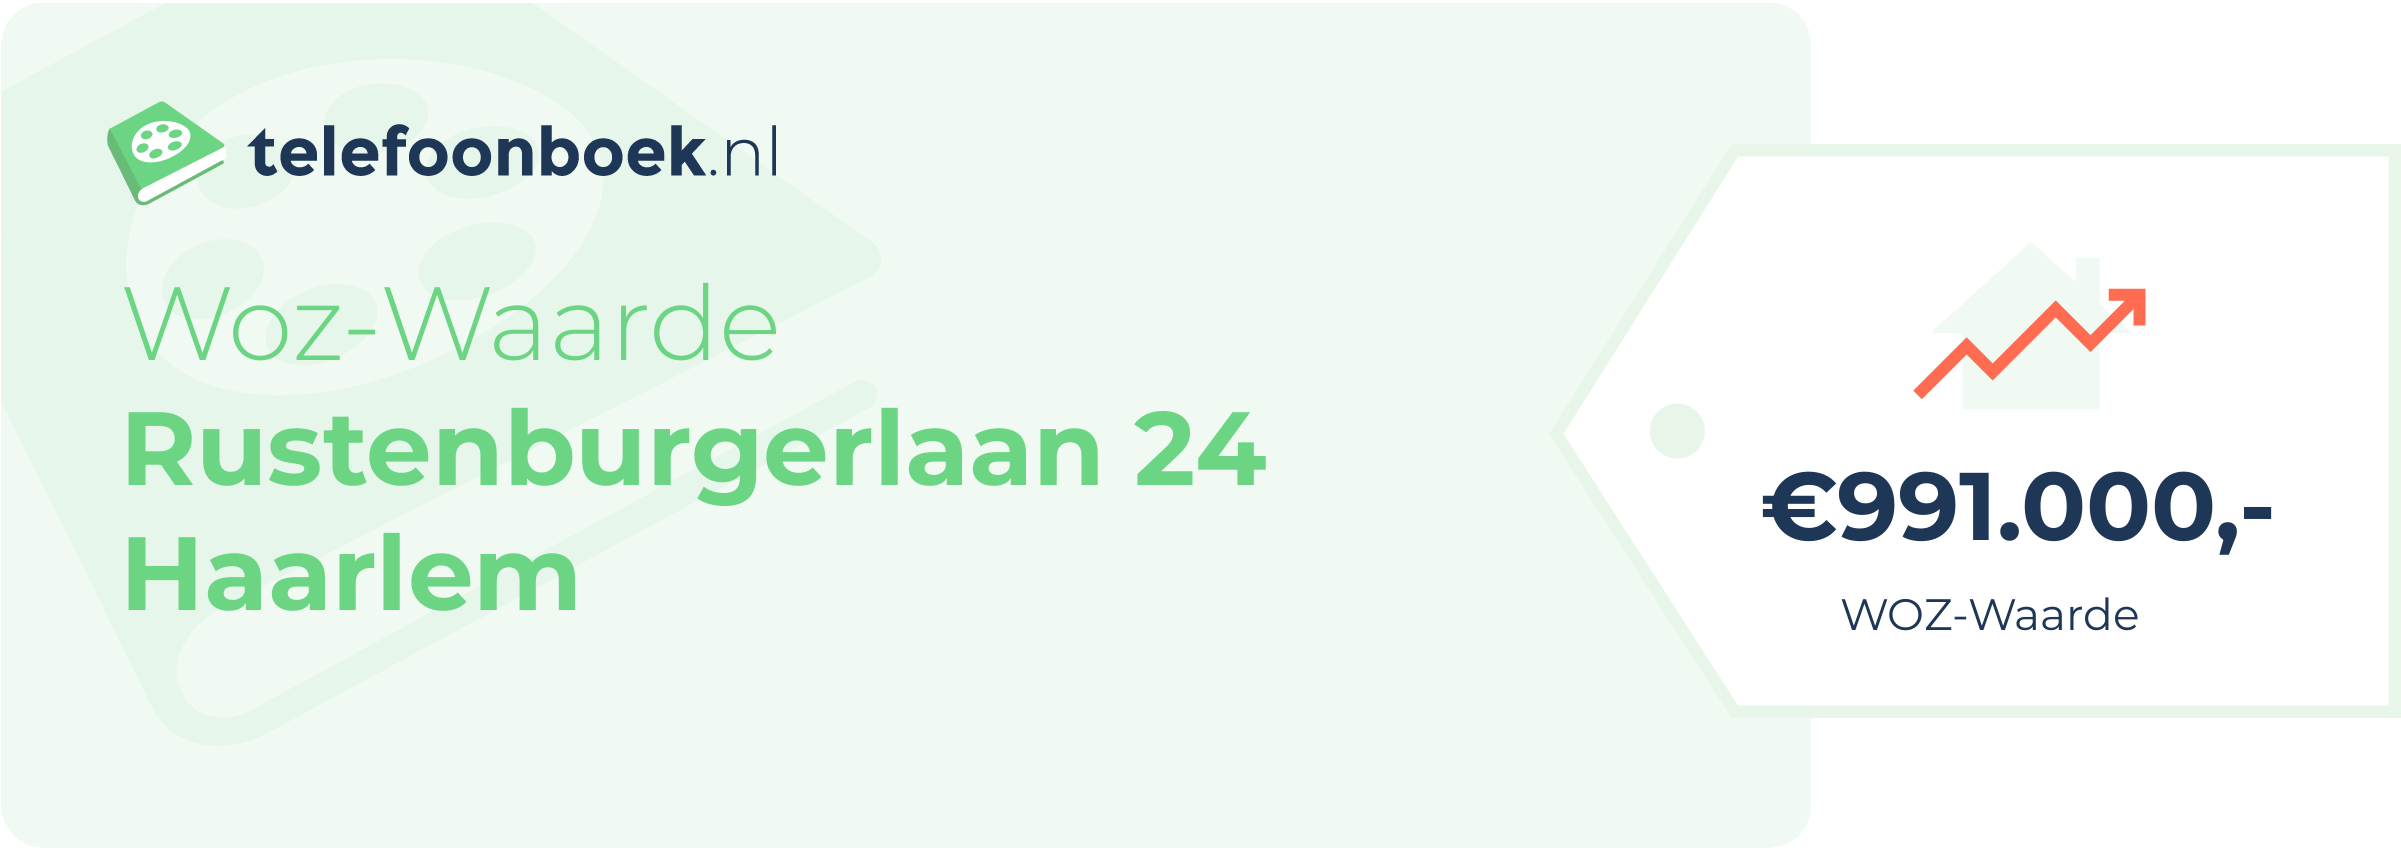 WOZ-waarde Rustenburgerlaan 24 Haarlem